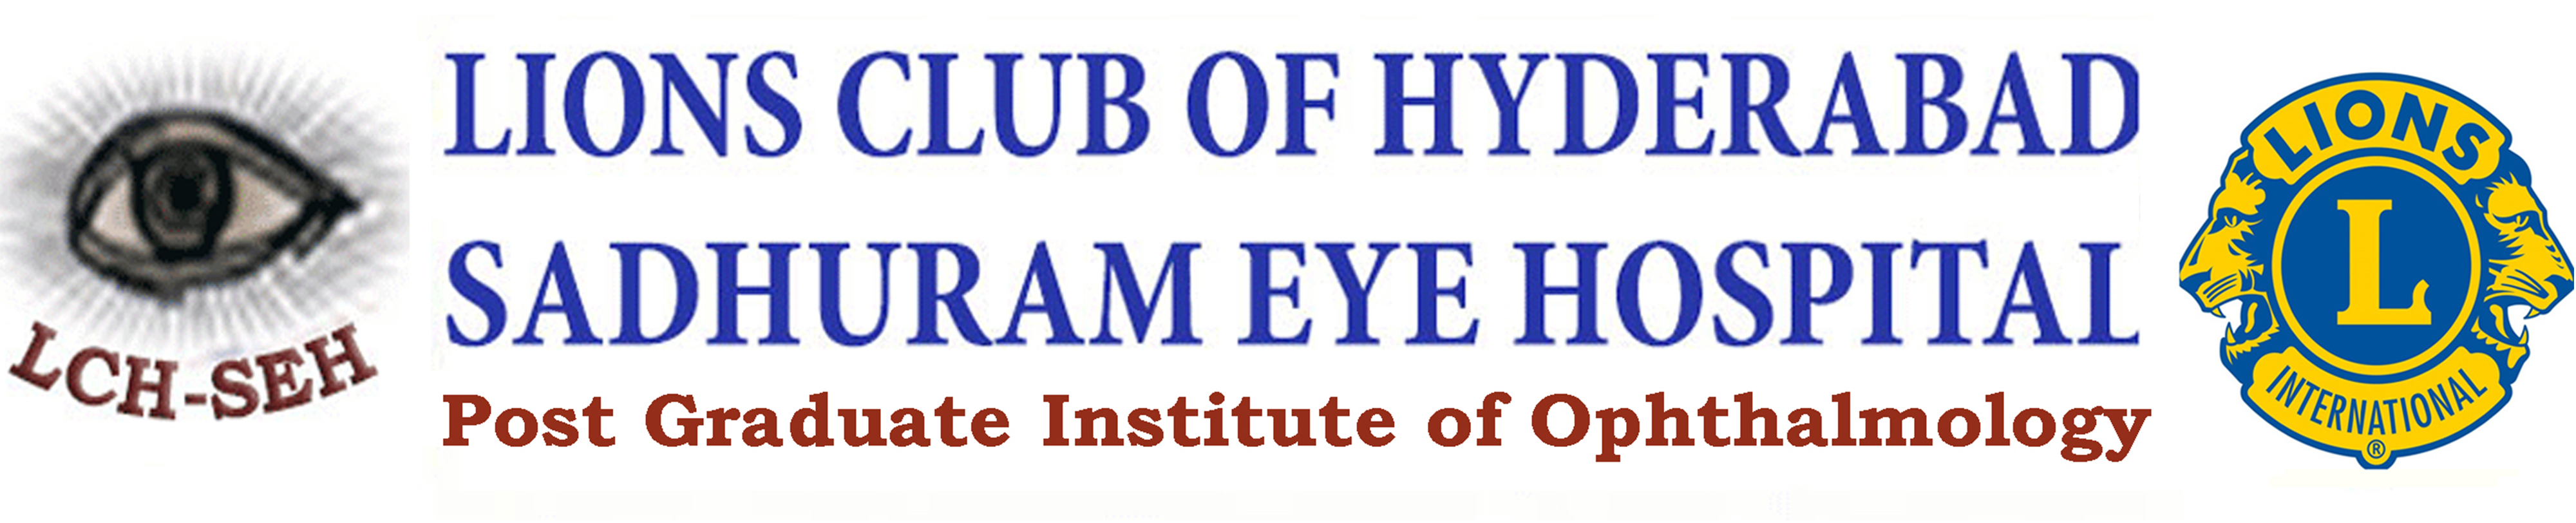 Lions Club of Hyderabad Sadhuram Eye Hospital|Clinics|Medical Services